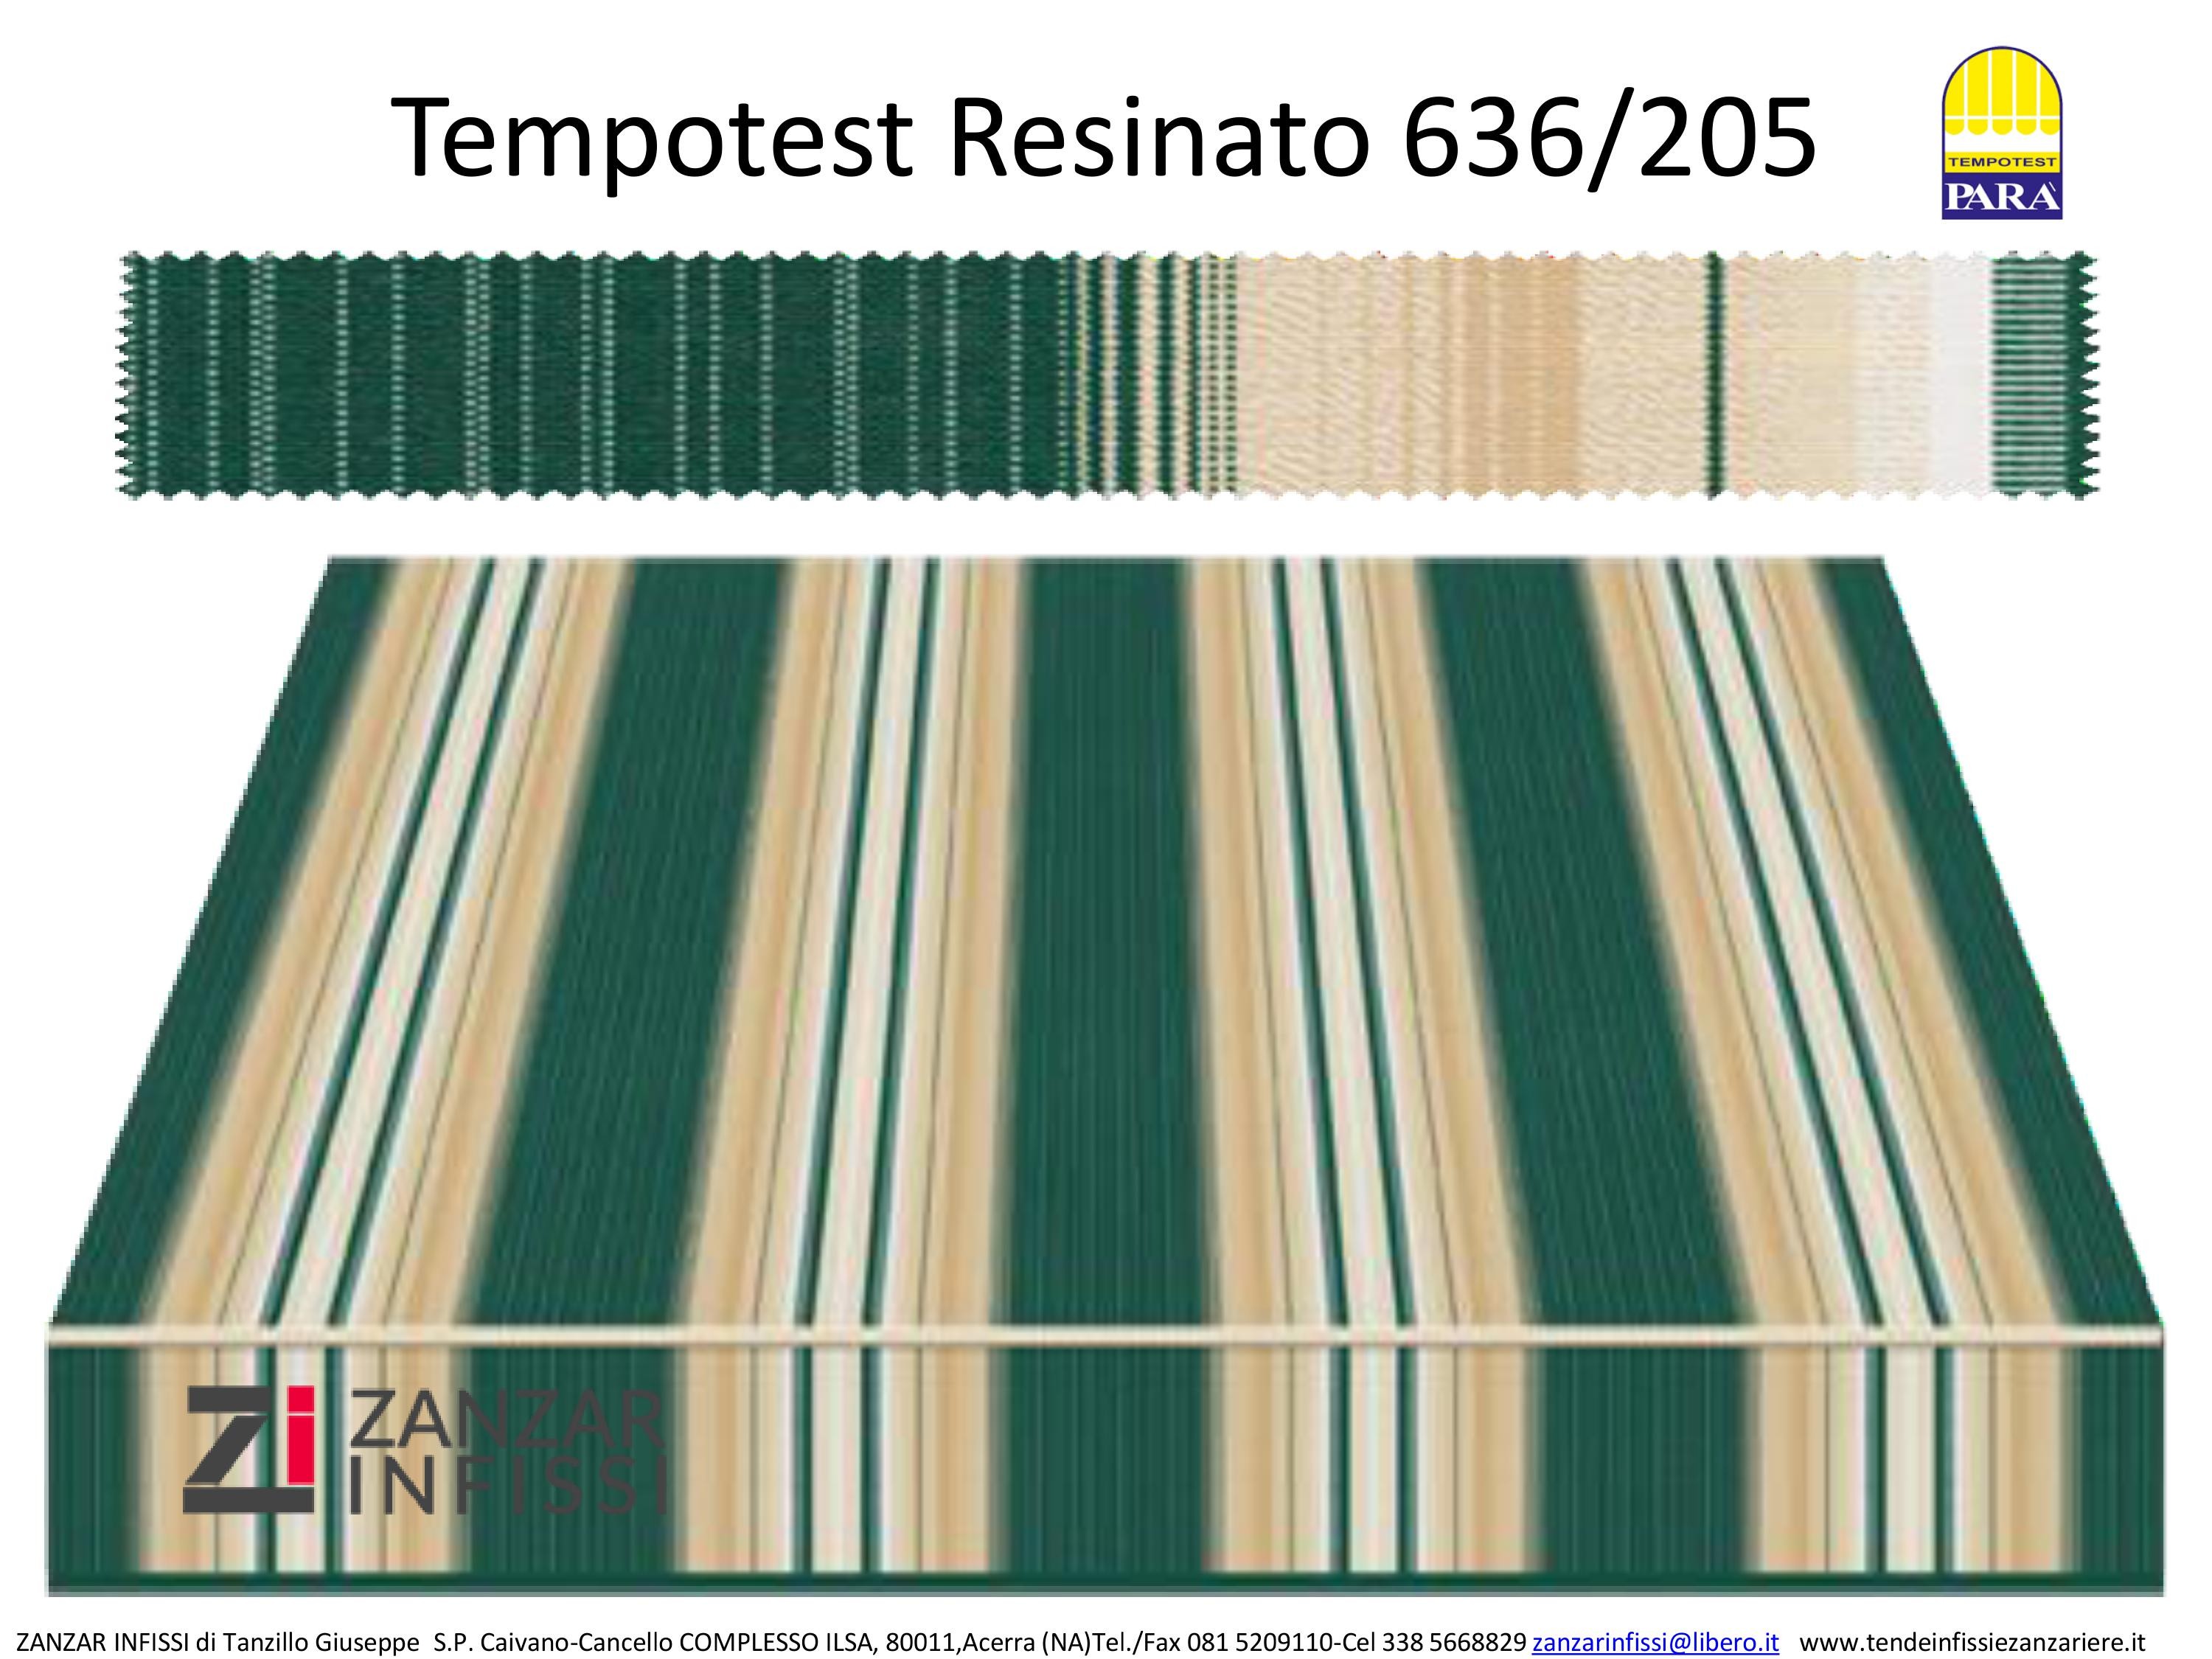 Tempotest resinato 636/205